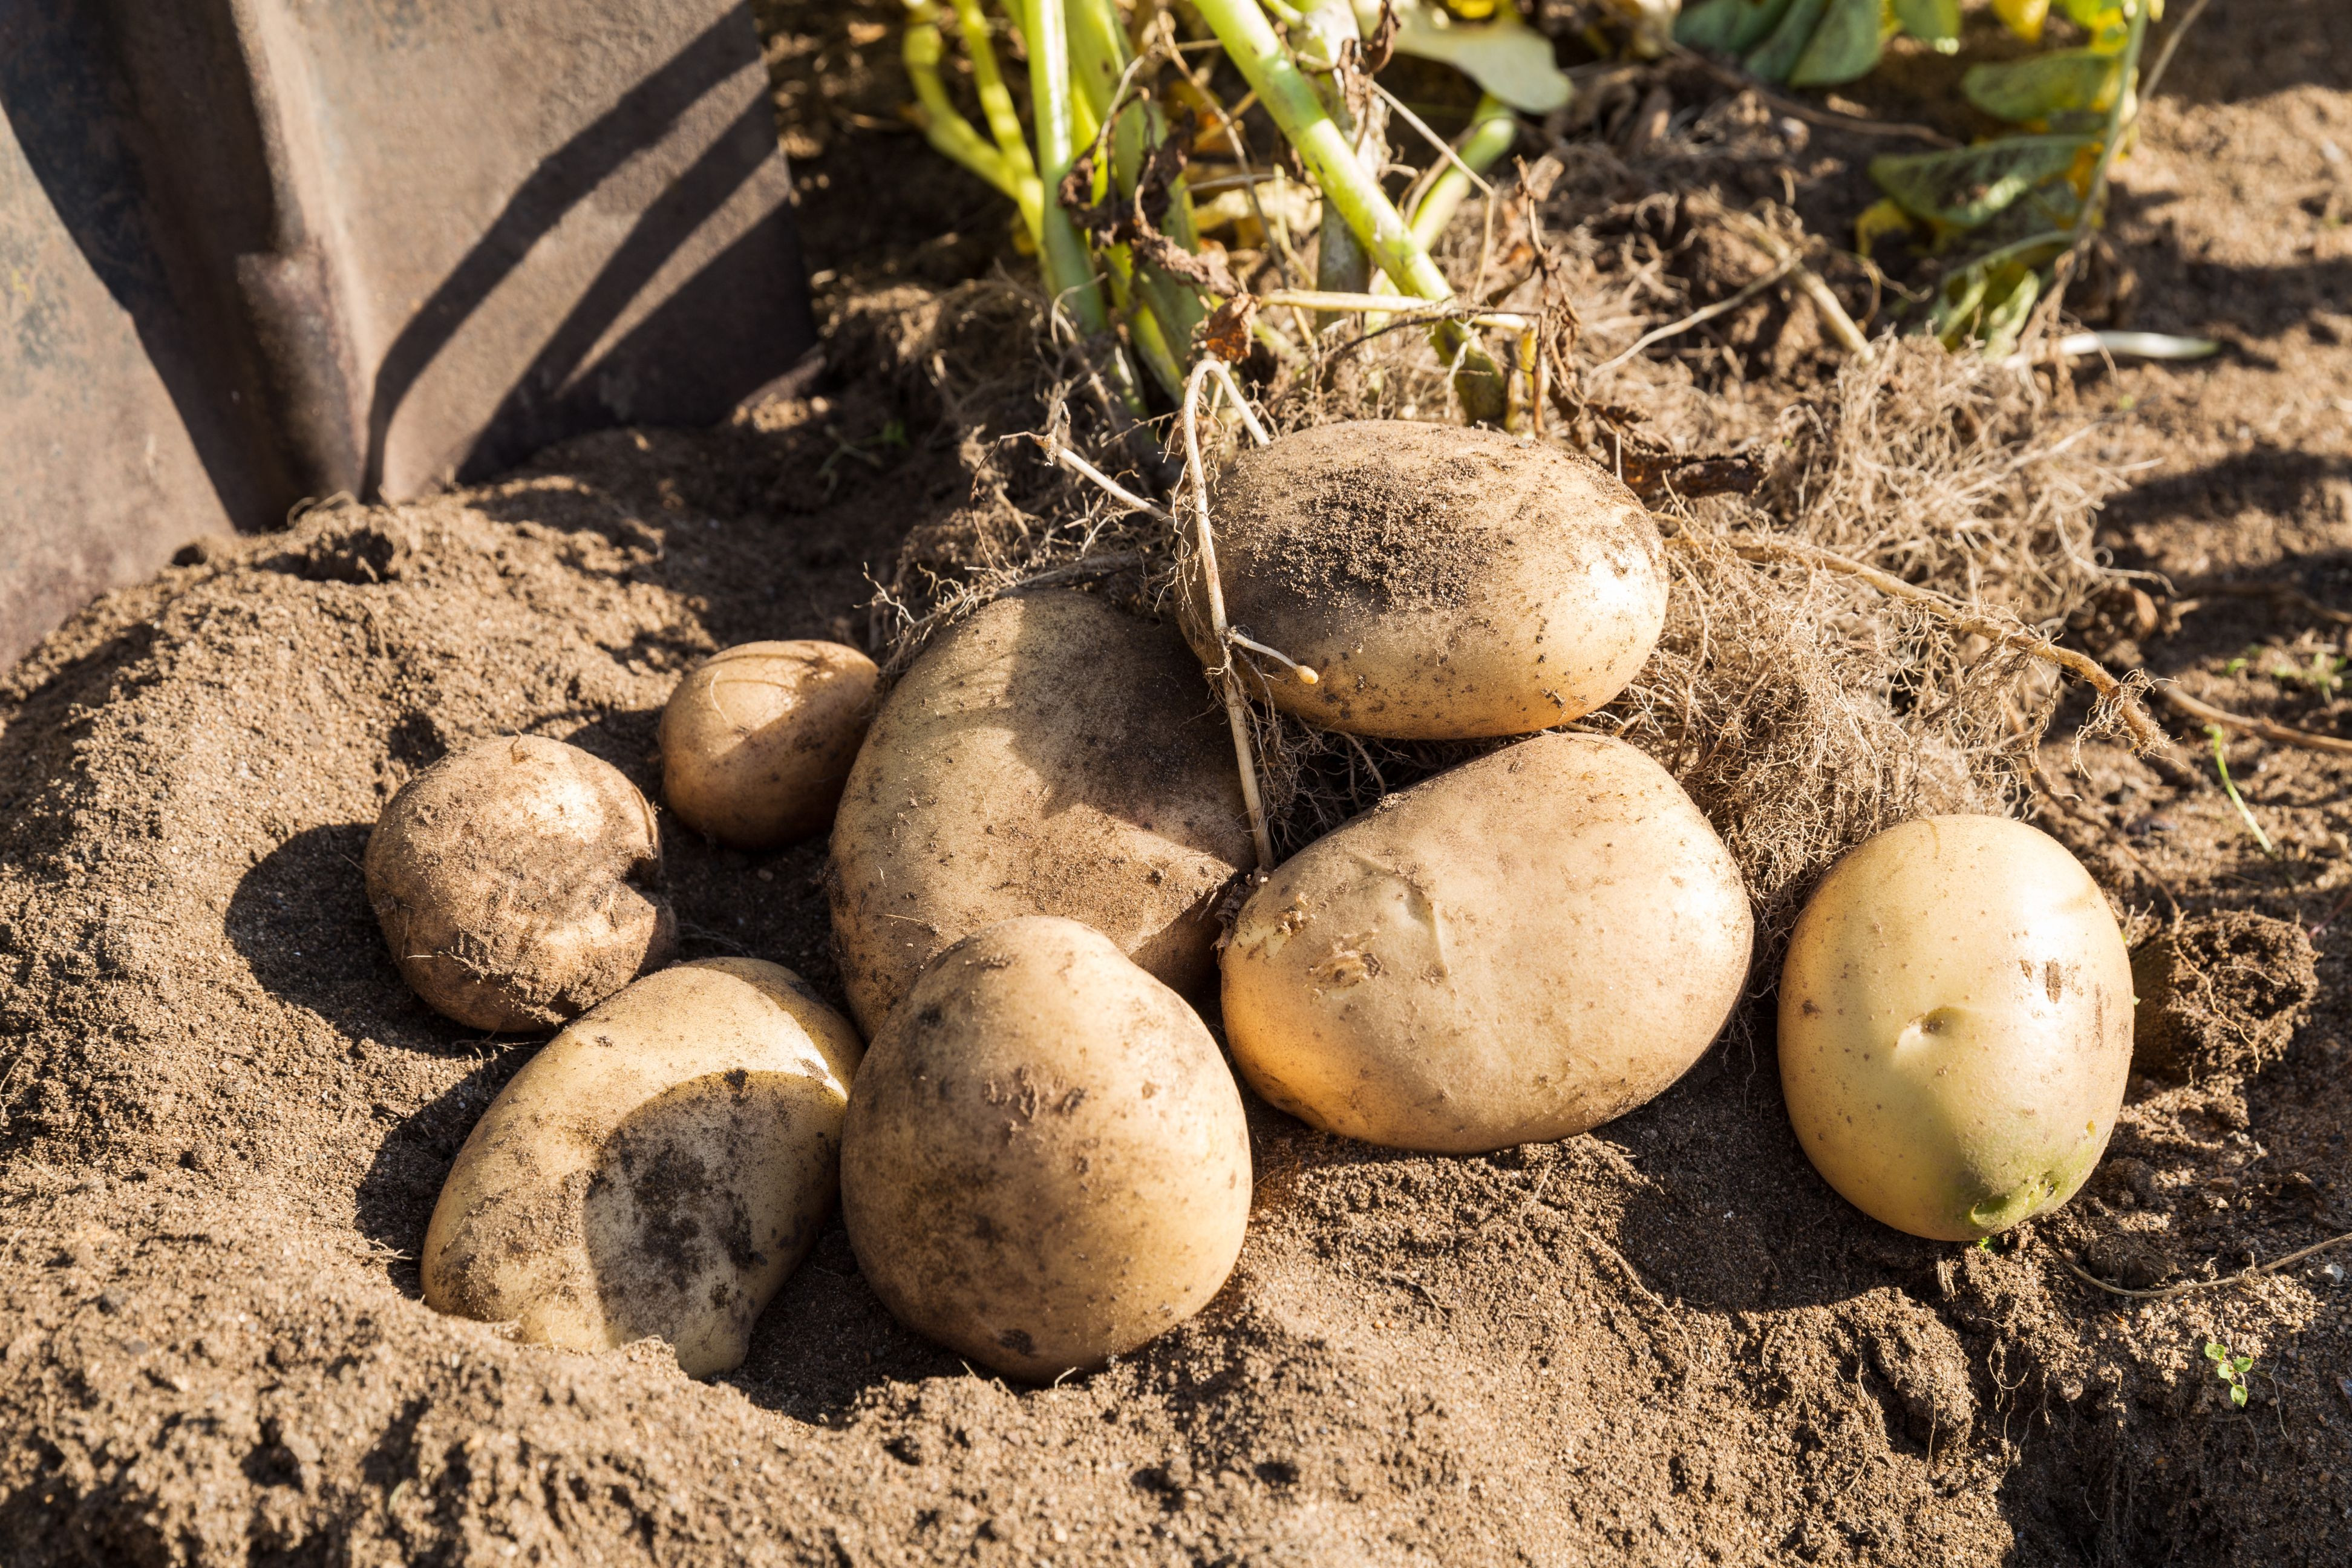 Quand planter les plants de pommes de terre ?